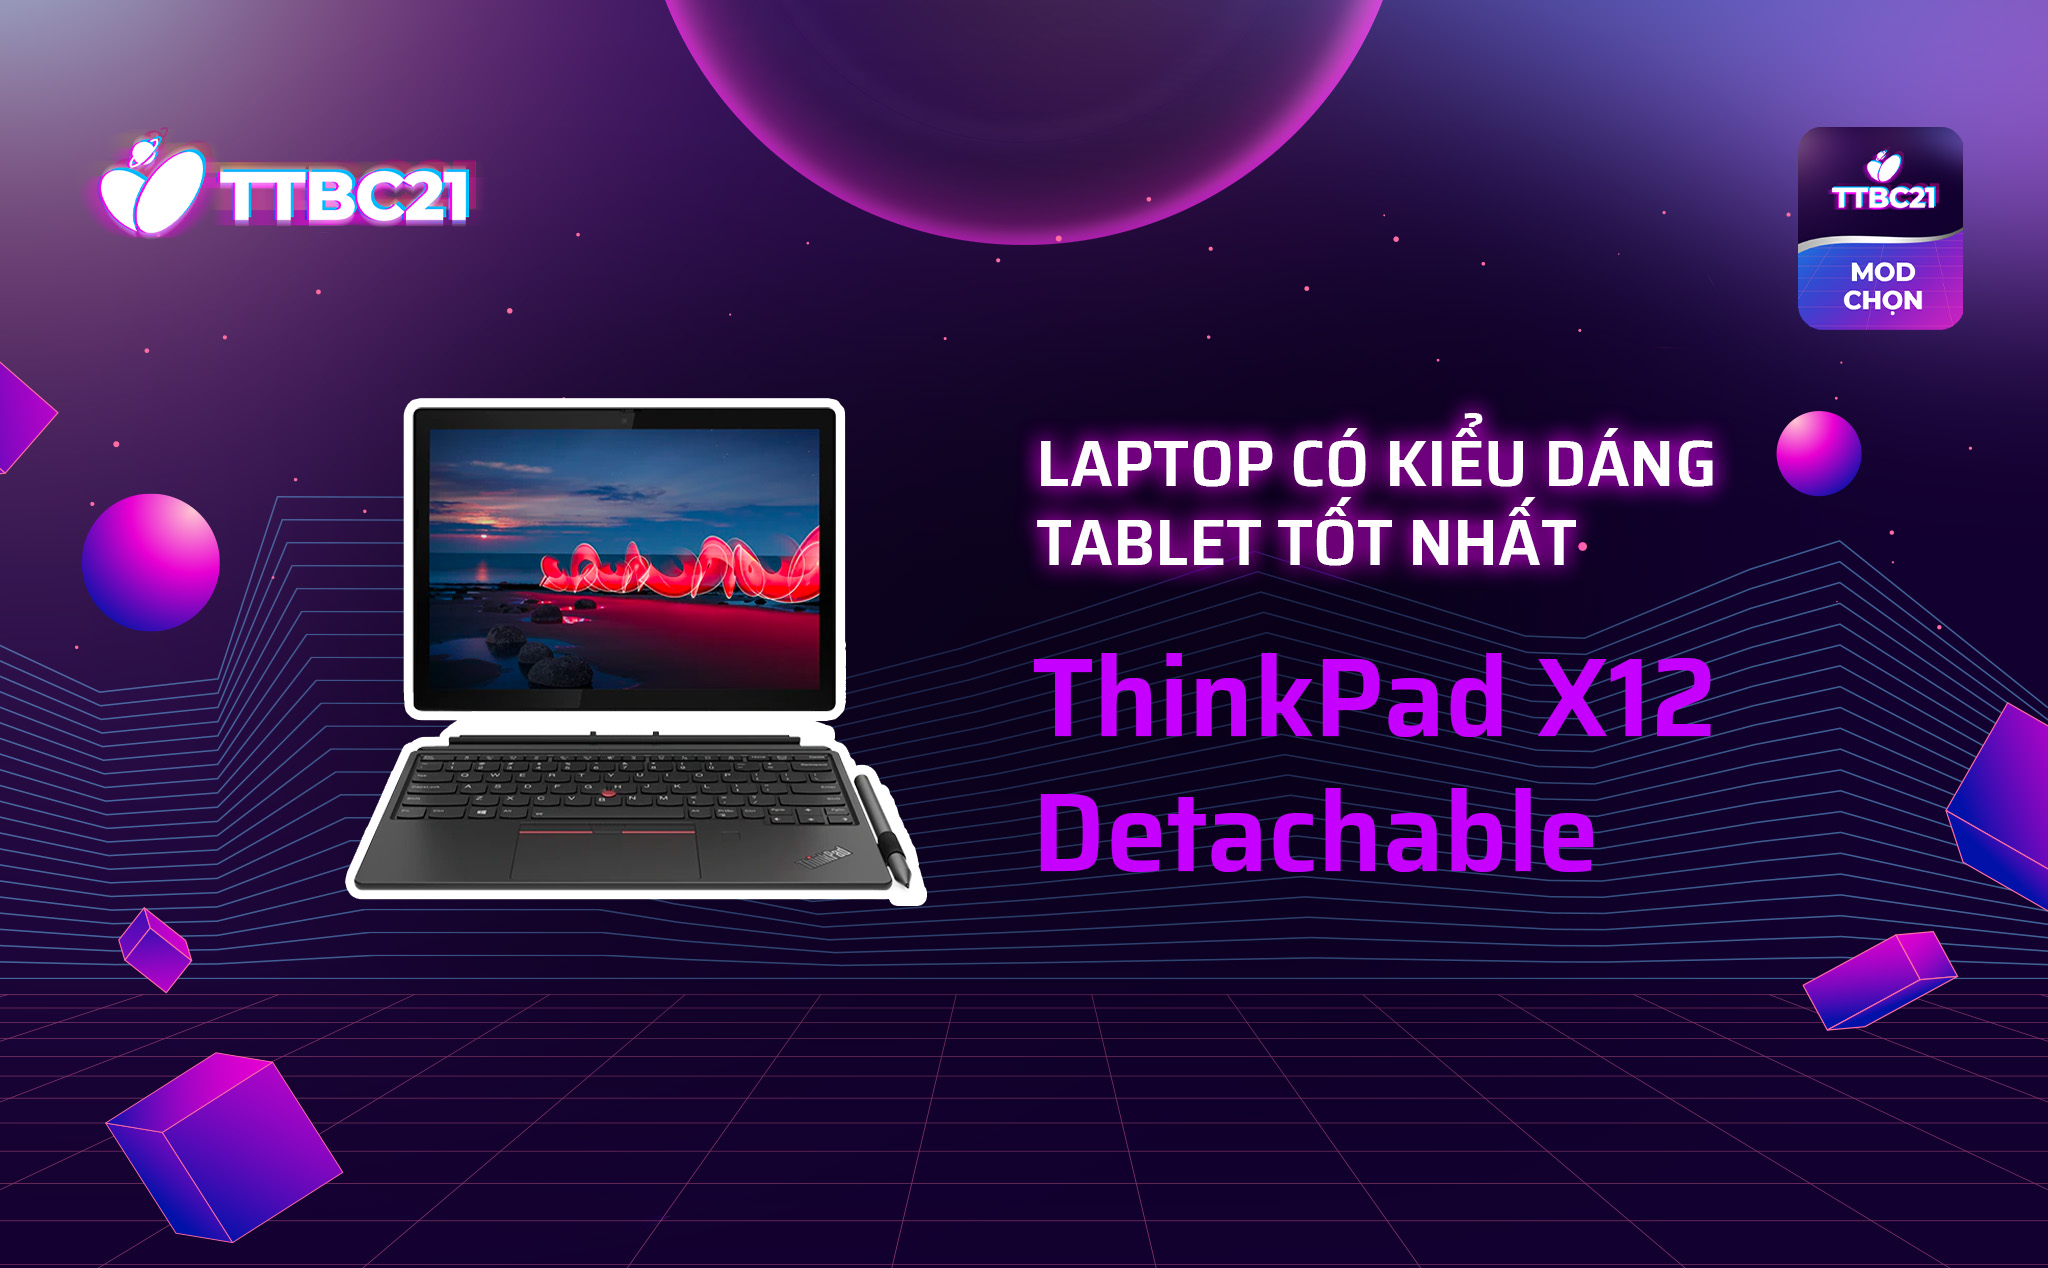 TTBC21 - Mod Choice: Laptop có kiểu dáng tablet tốt nhất - ThinkPad X12 Detachable